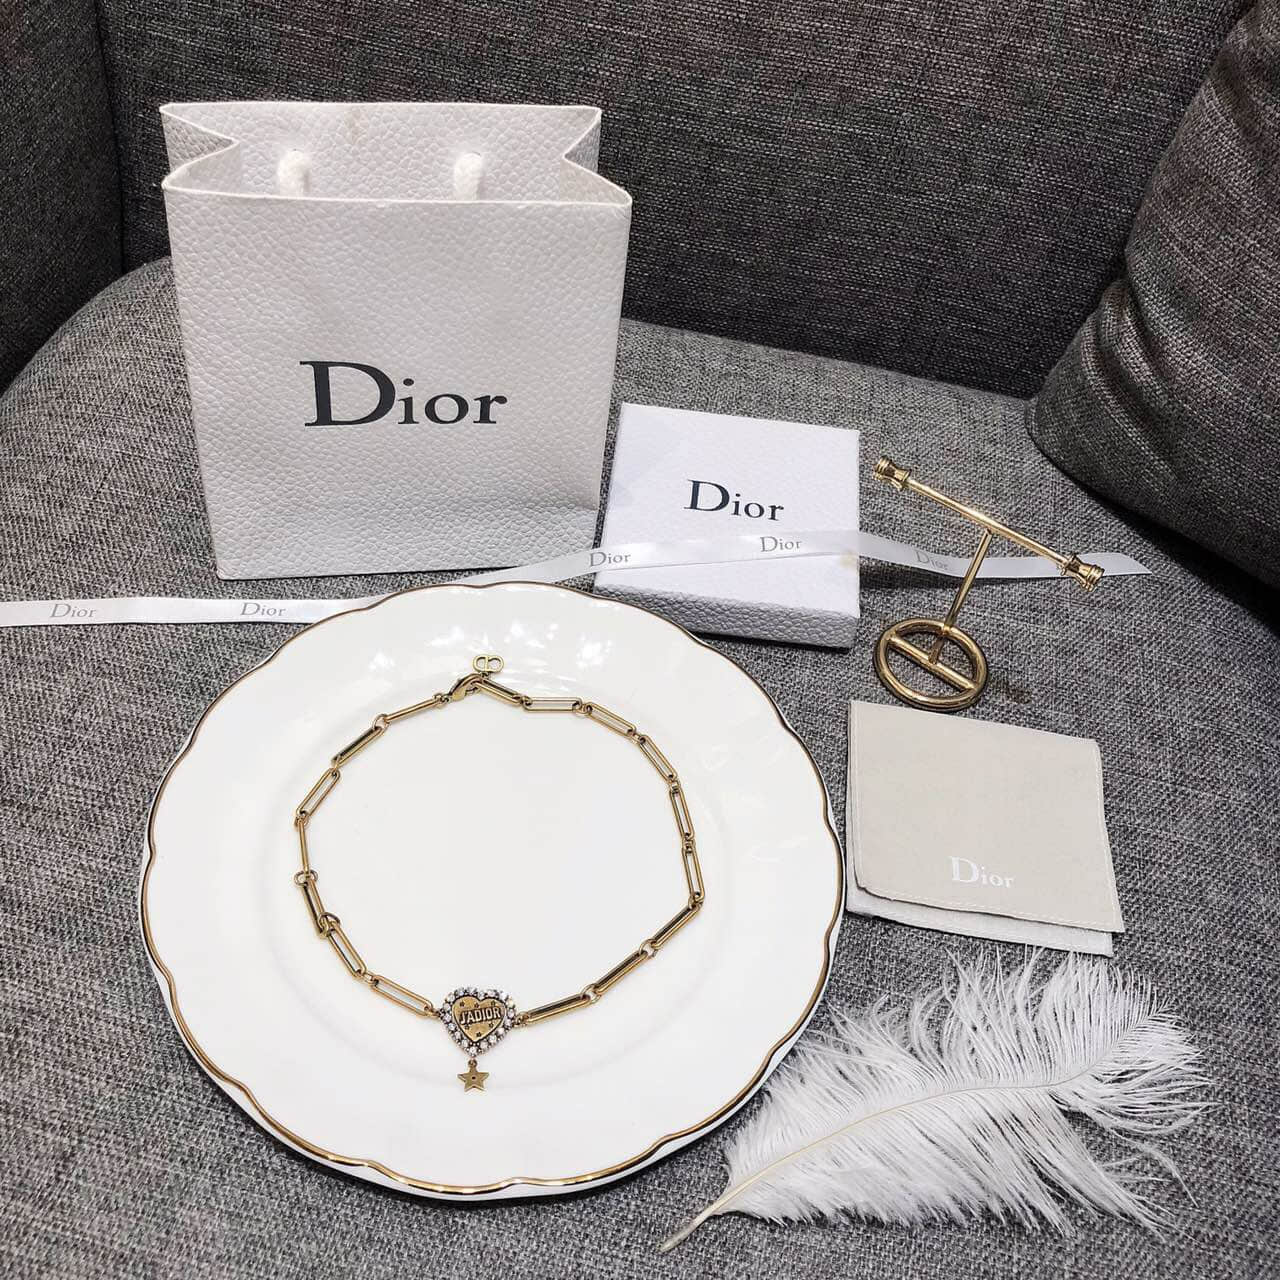 Dior迪奥 专柜一致黄铜材质 18款桃心项链